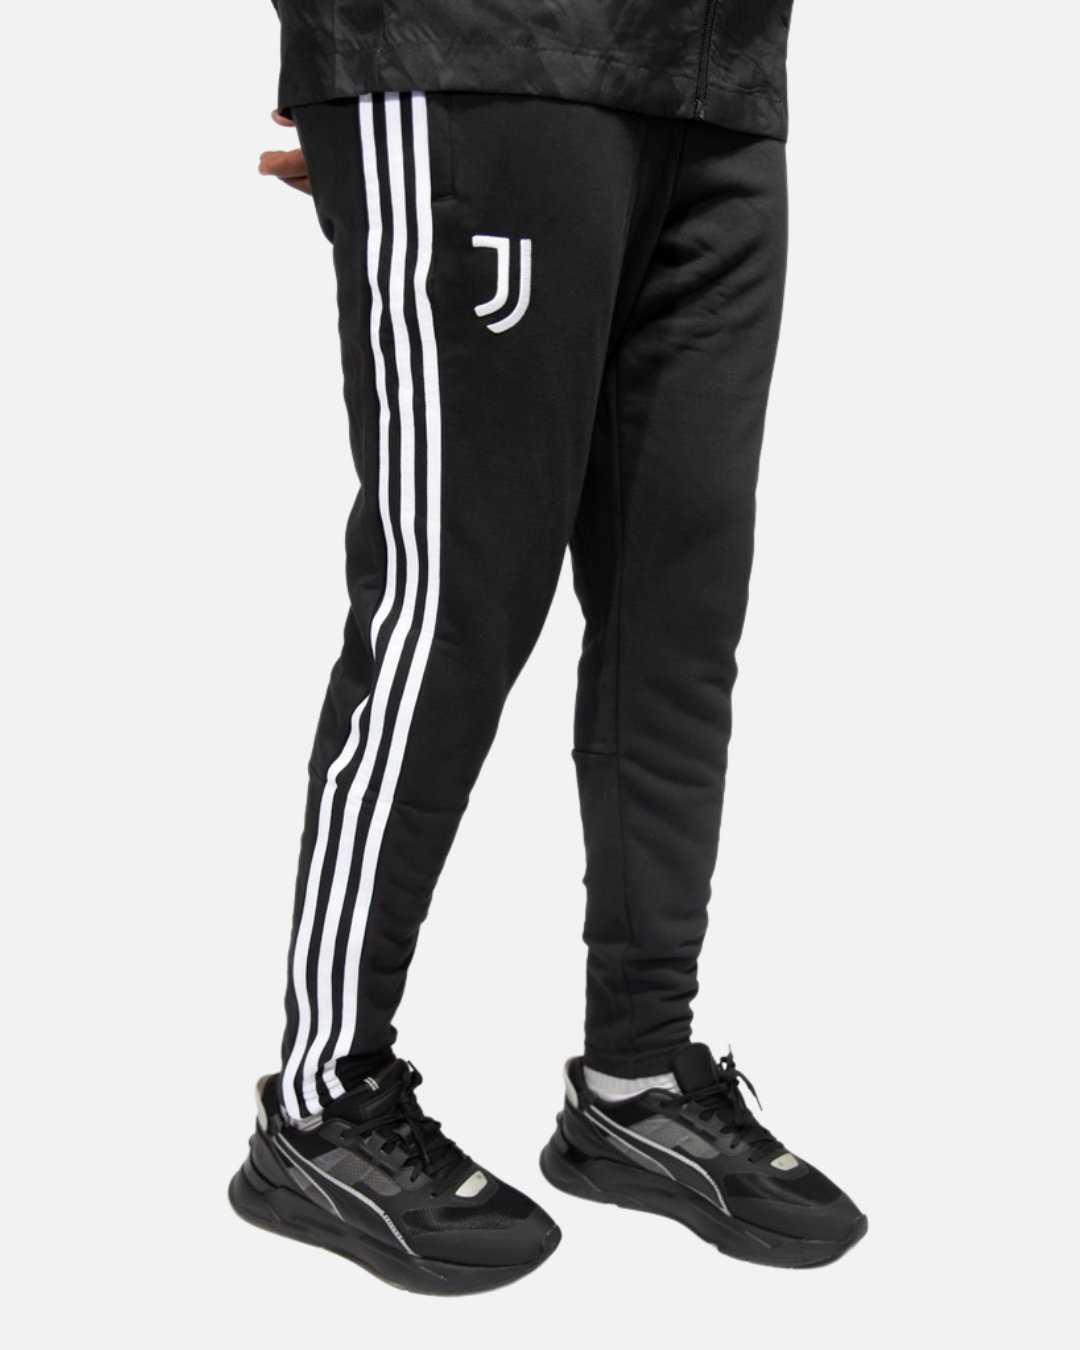 Juventus DNA 2022/2023 training pants - Black/White